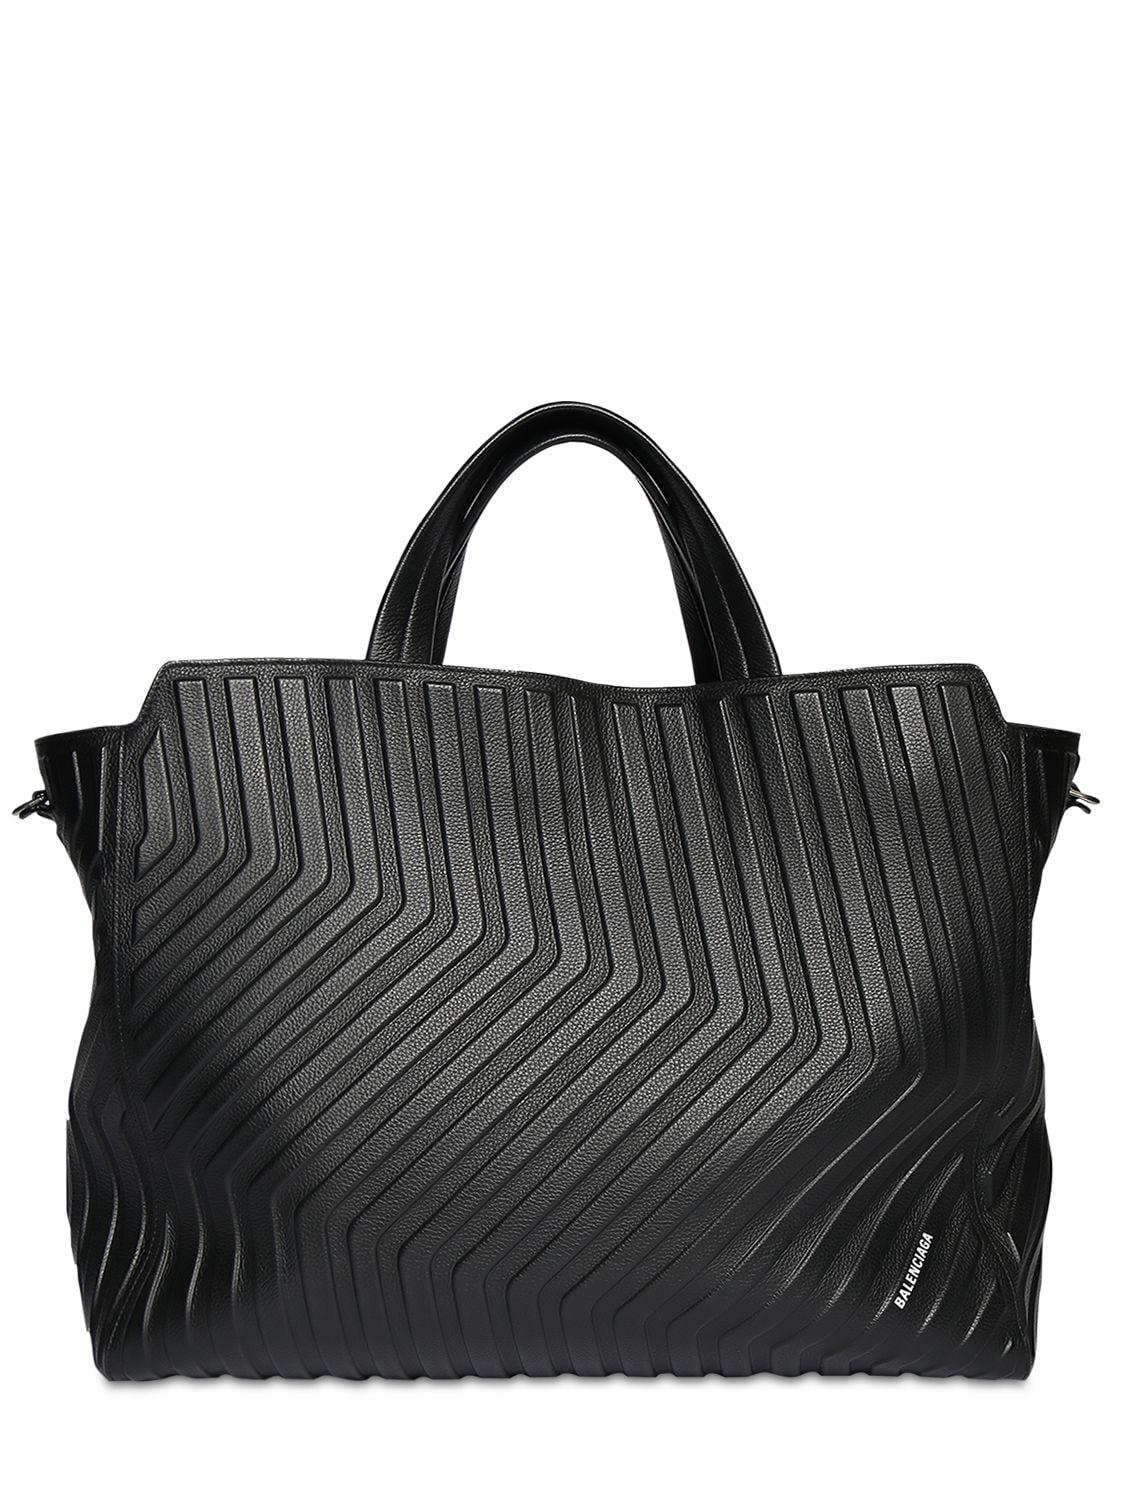 Balenciaga - East-west leather tote bag - Black | Luisaviaroma